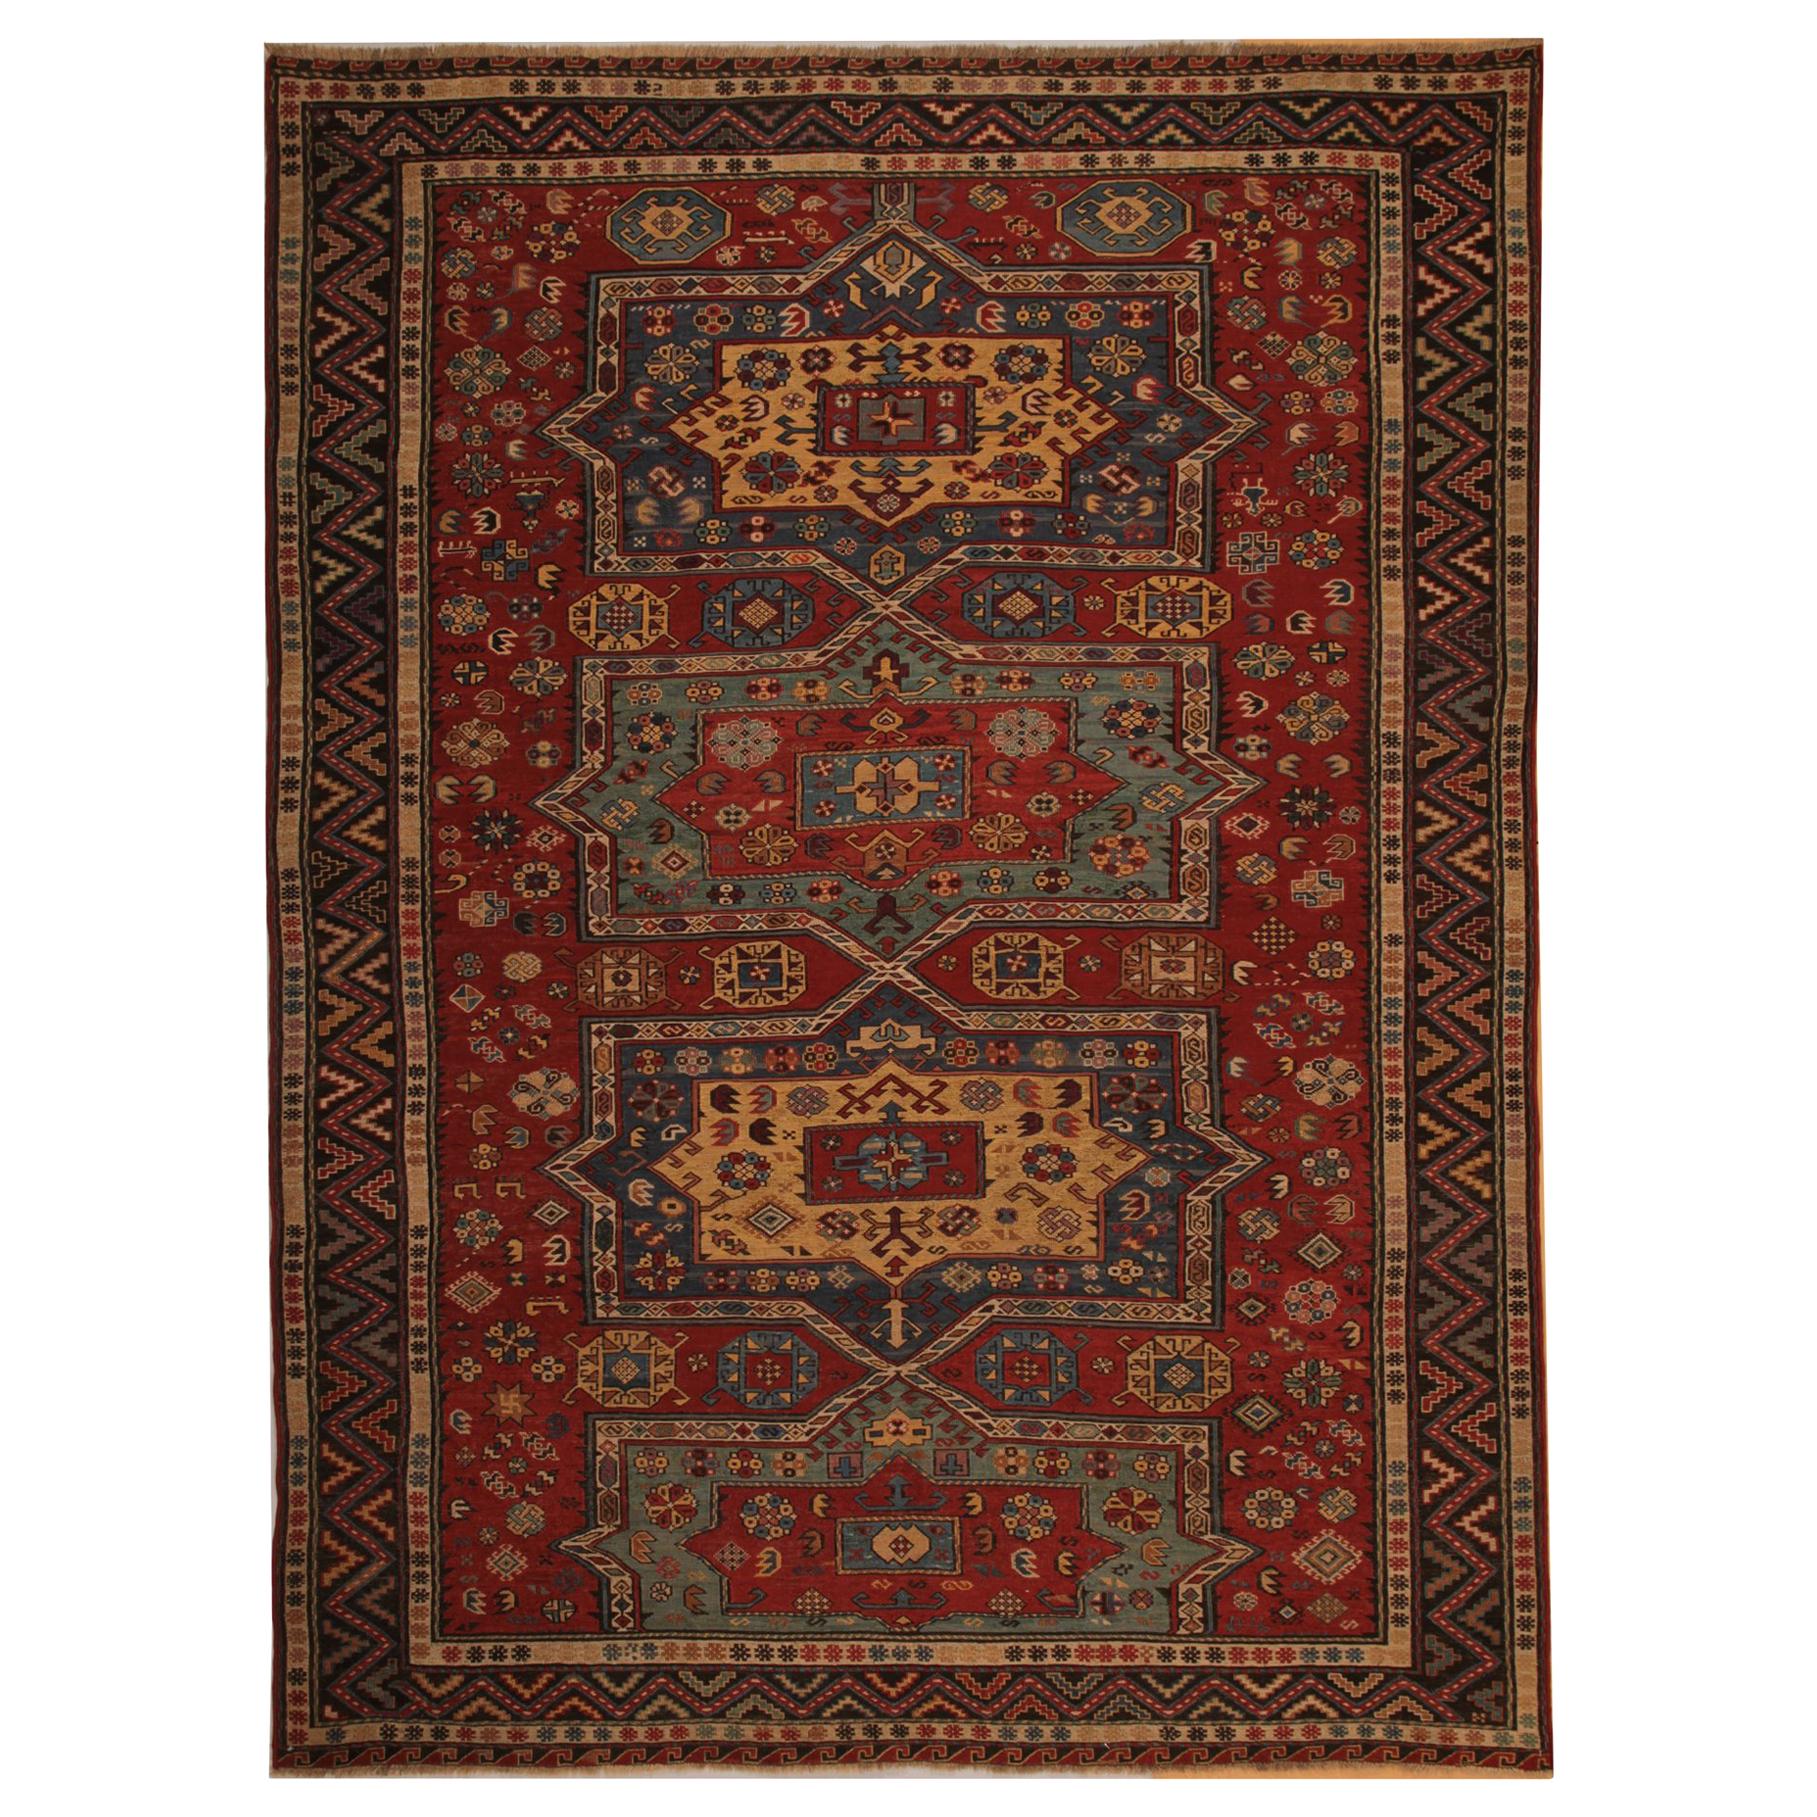 Antique Rug, Caucasian Sumakh Kilim Rug, Flat-Weave Carpet Oriental Rug